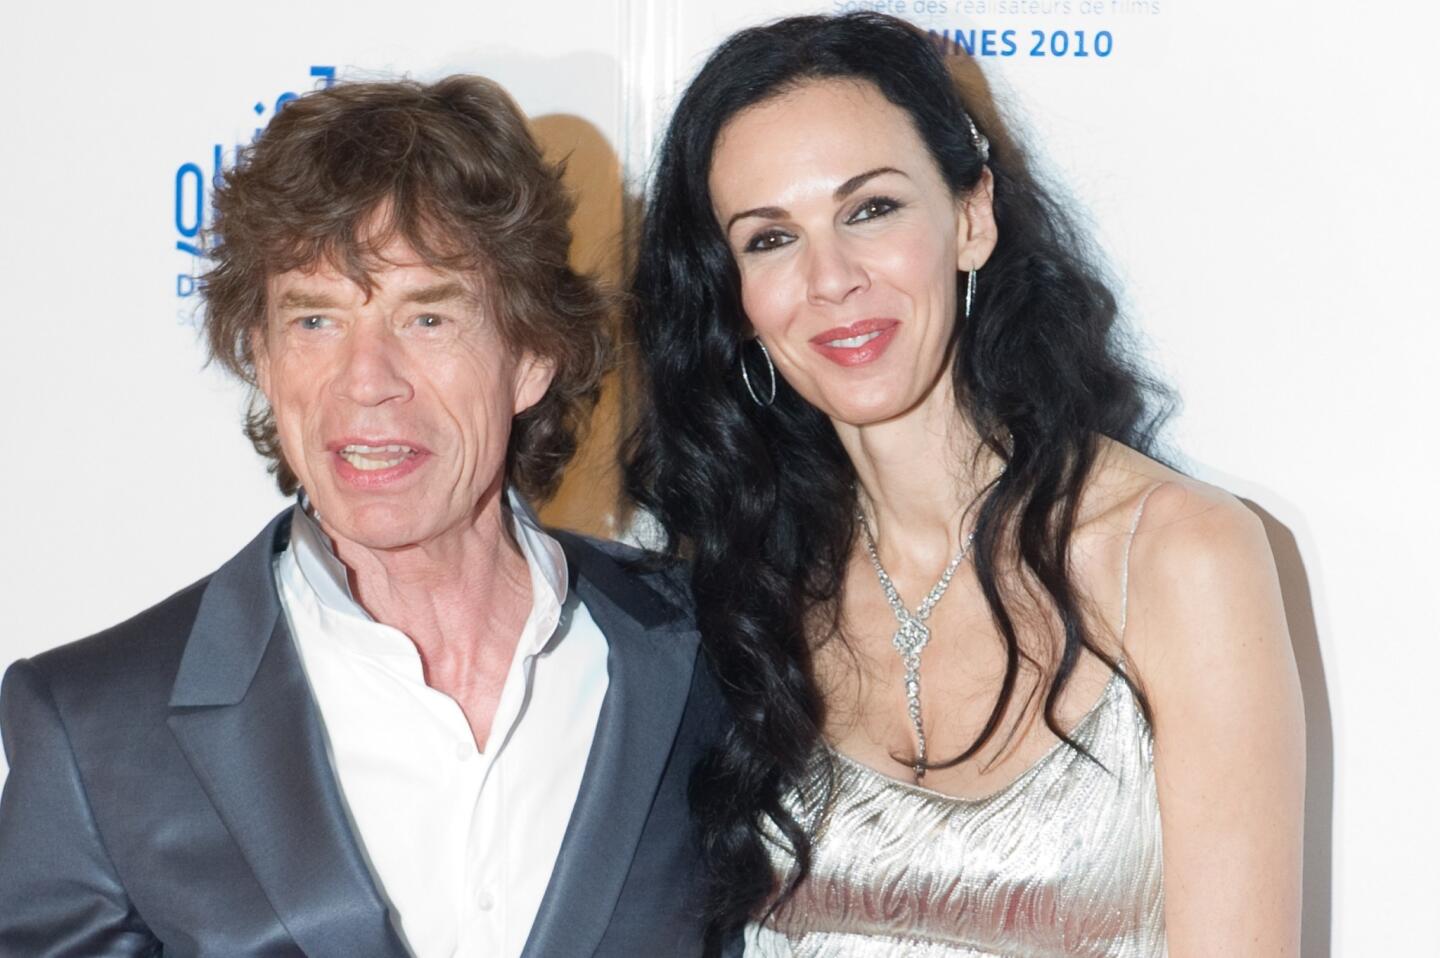 Mick Jagger reacts after lover L'Wren Scott's death